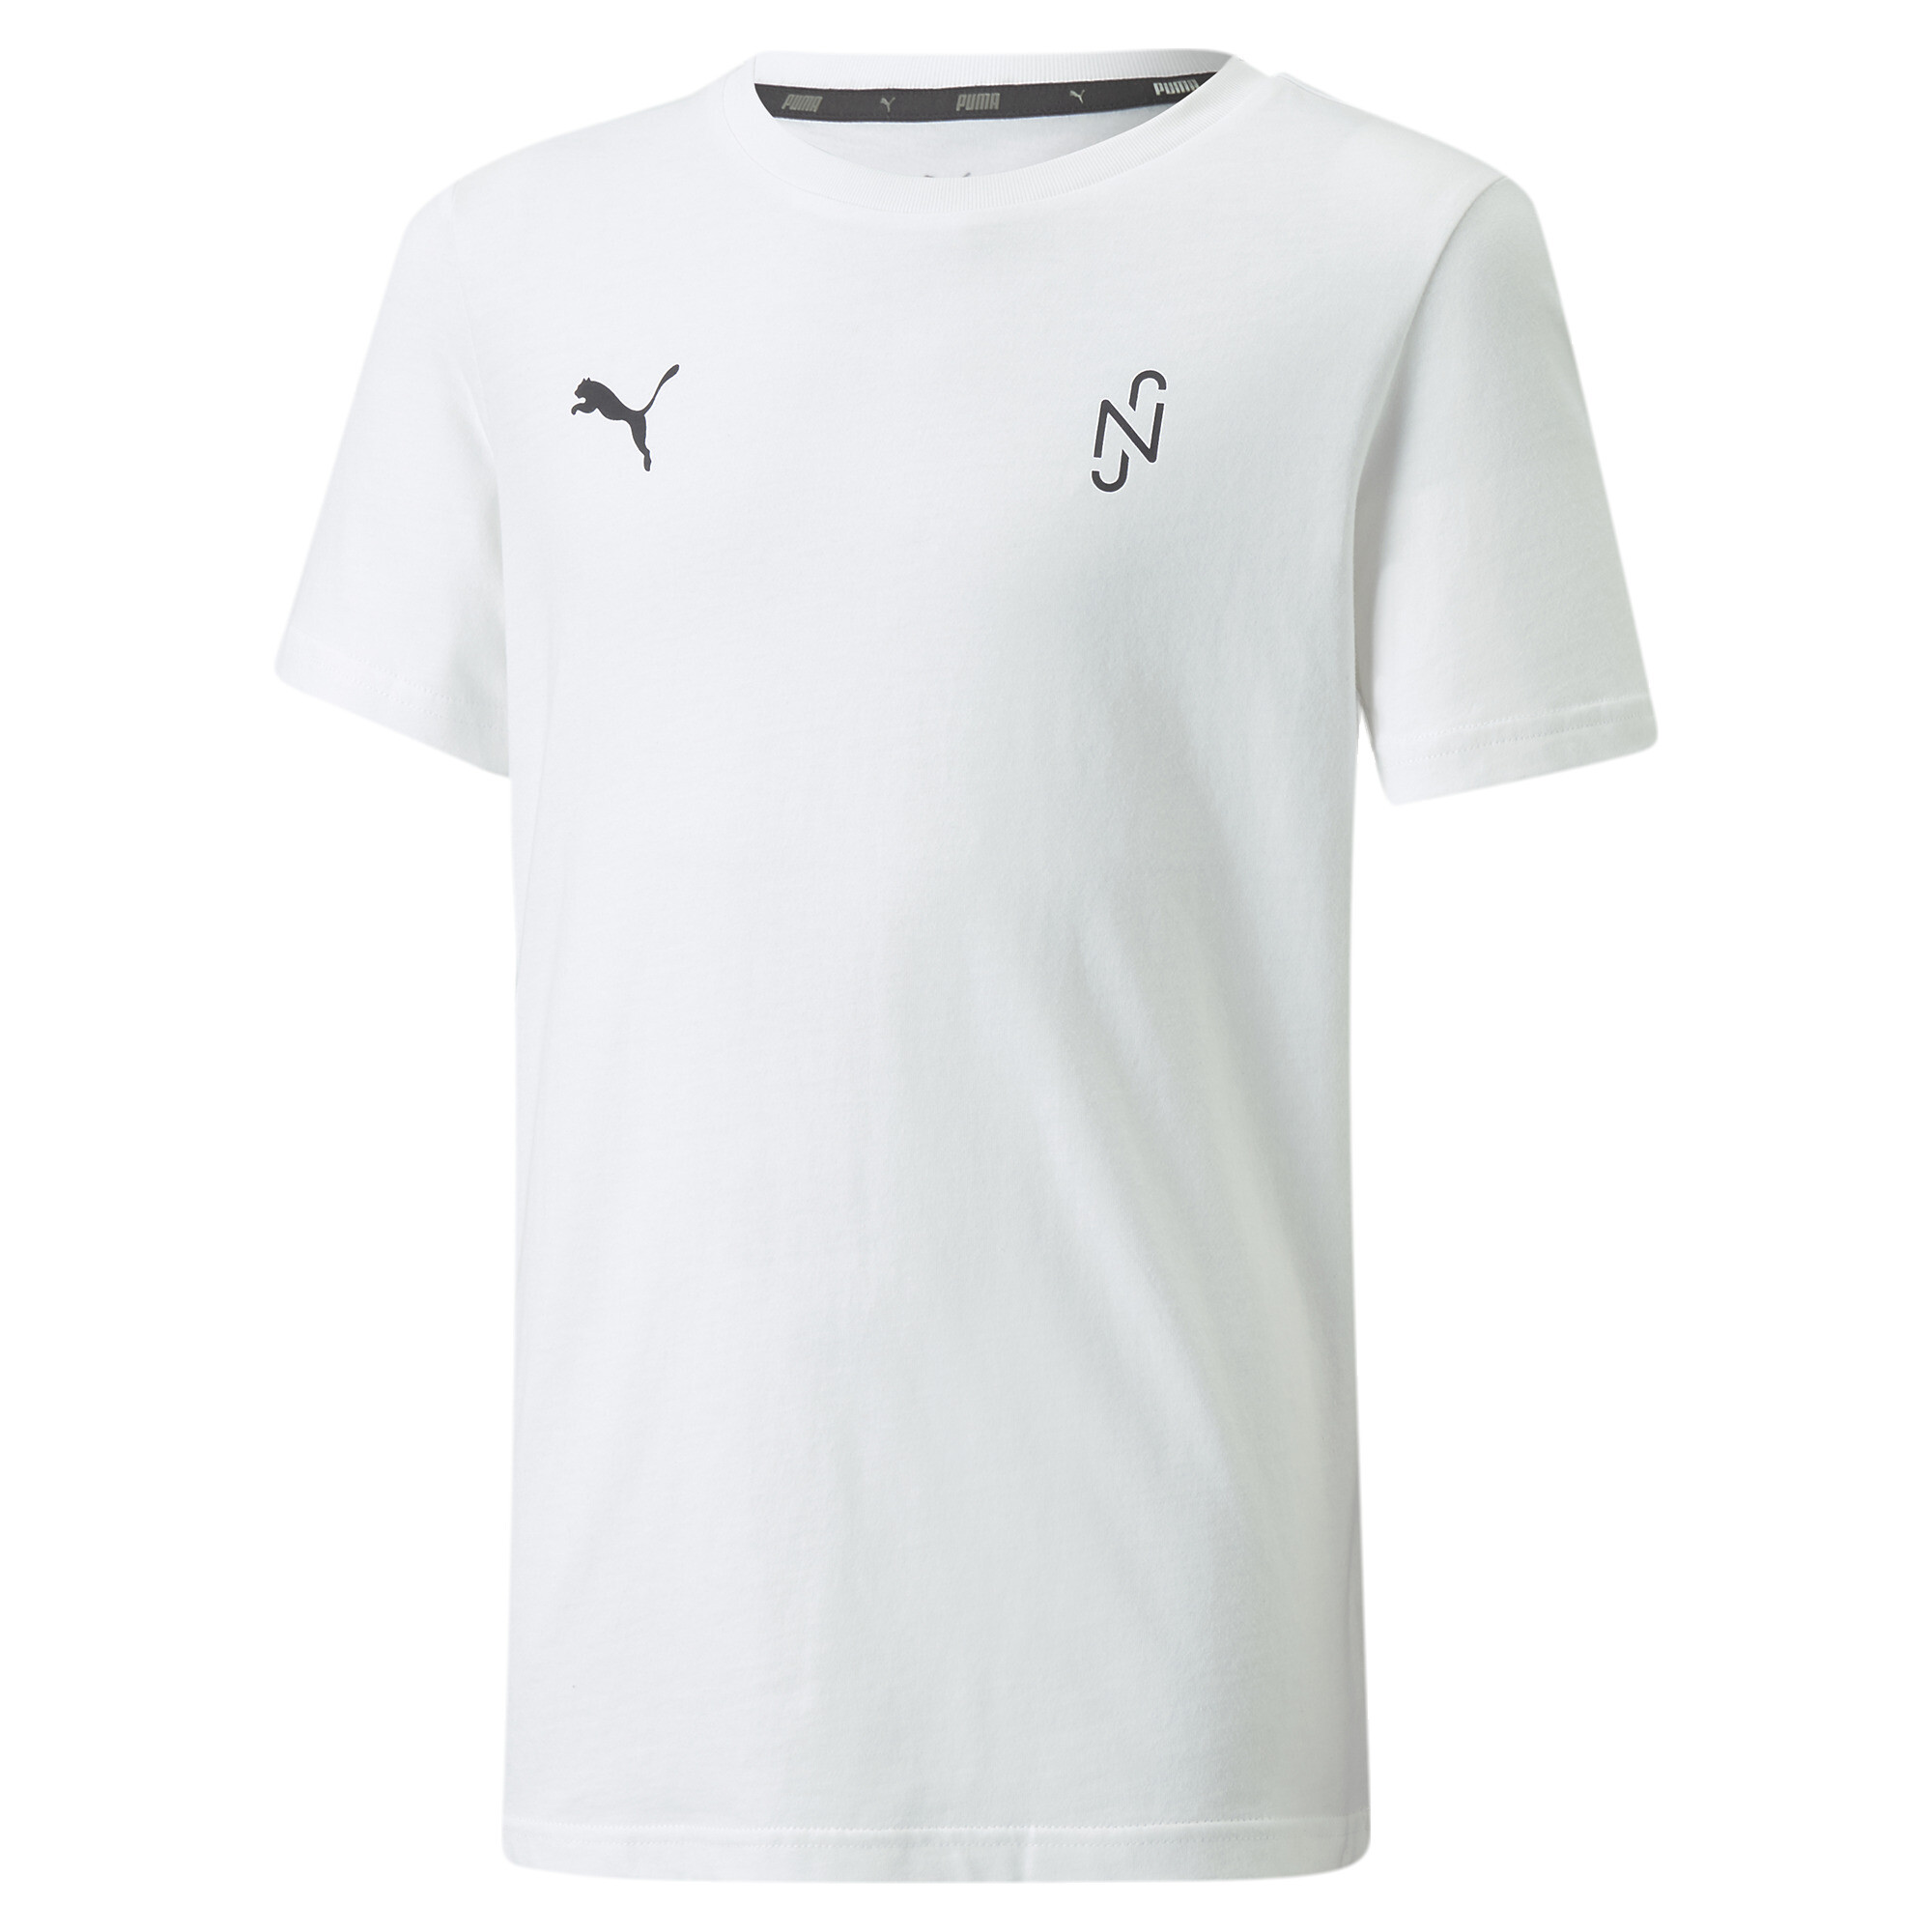  プーマ キッズ サッカー NJR ネイマール THRILL グラフィック 半袖 Tシャツ 116-152cm メンズ Puma White ｜PUMA.com